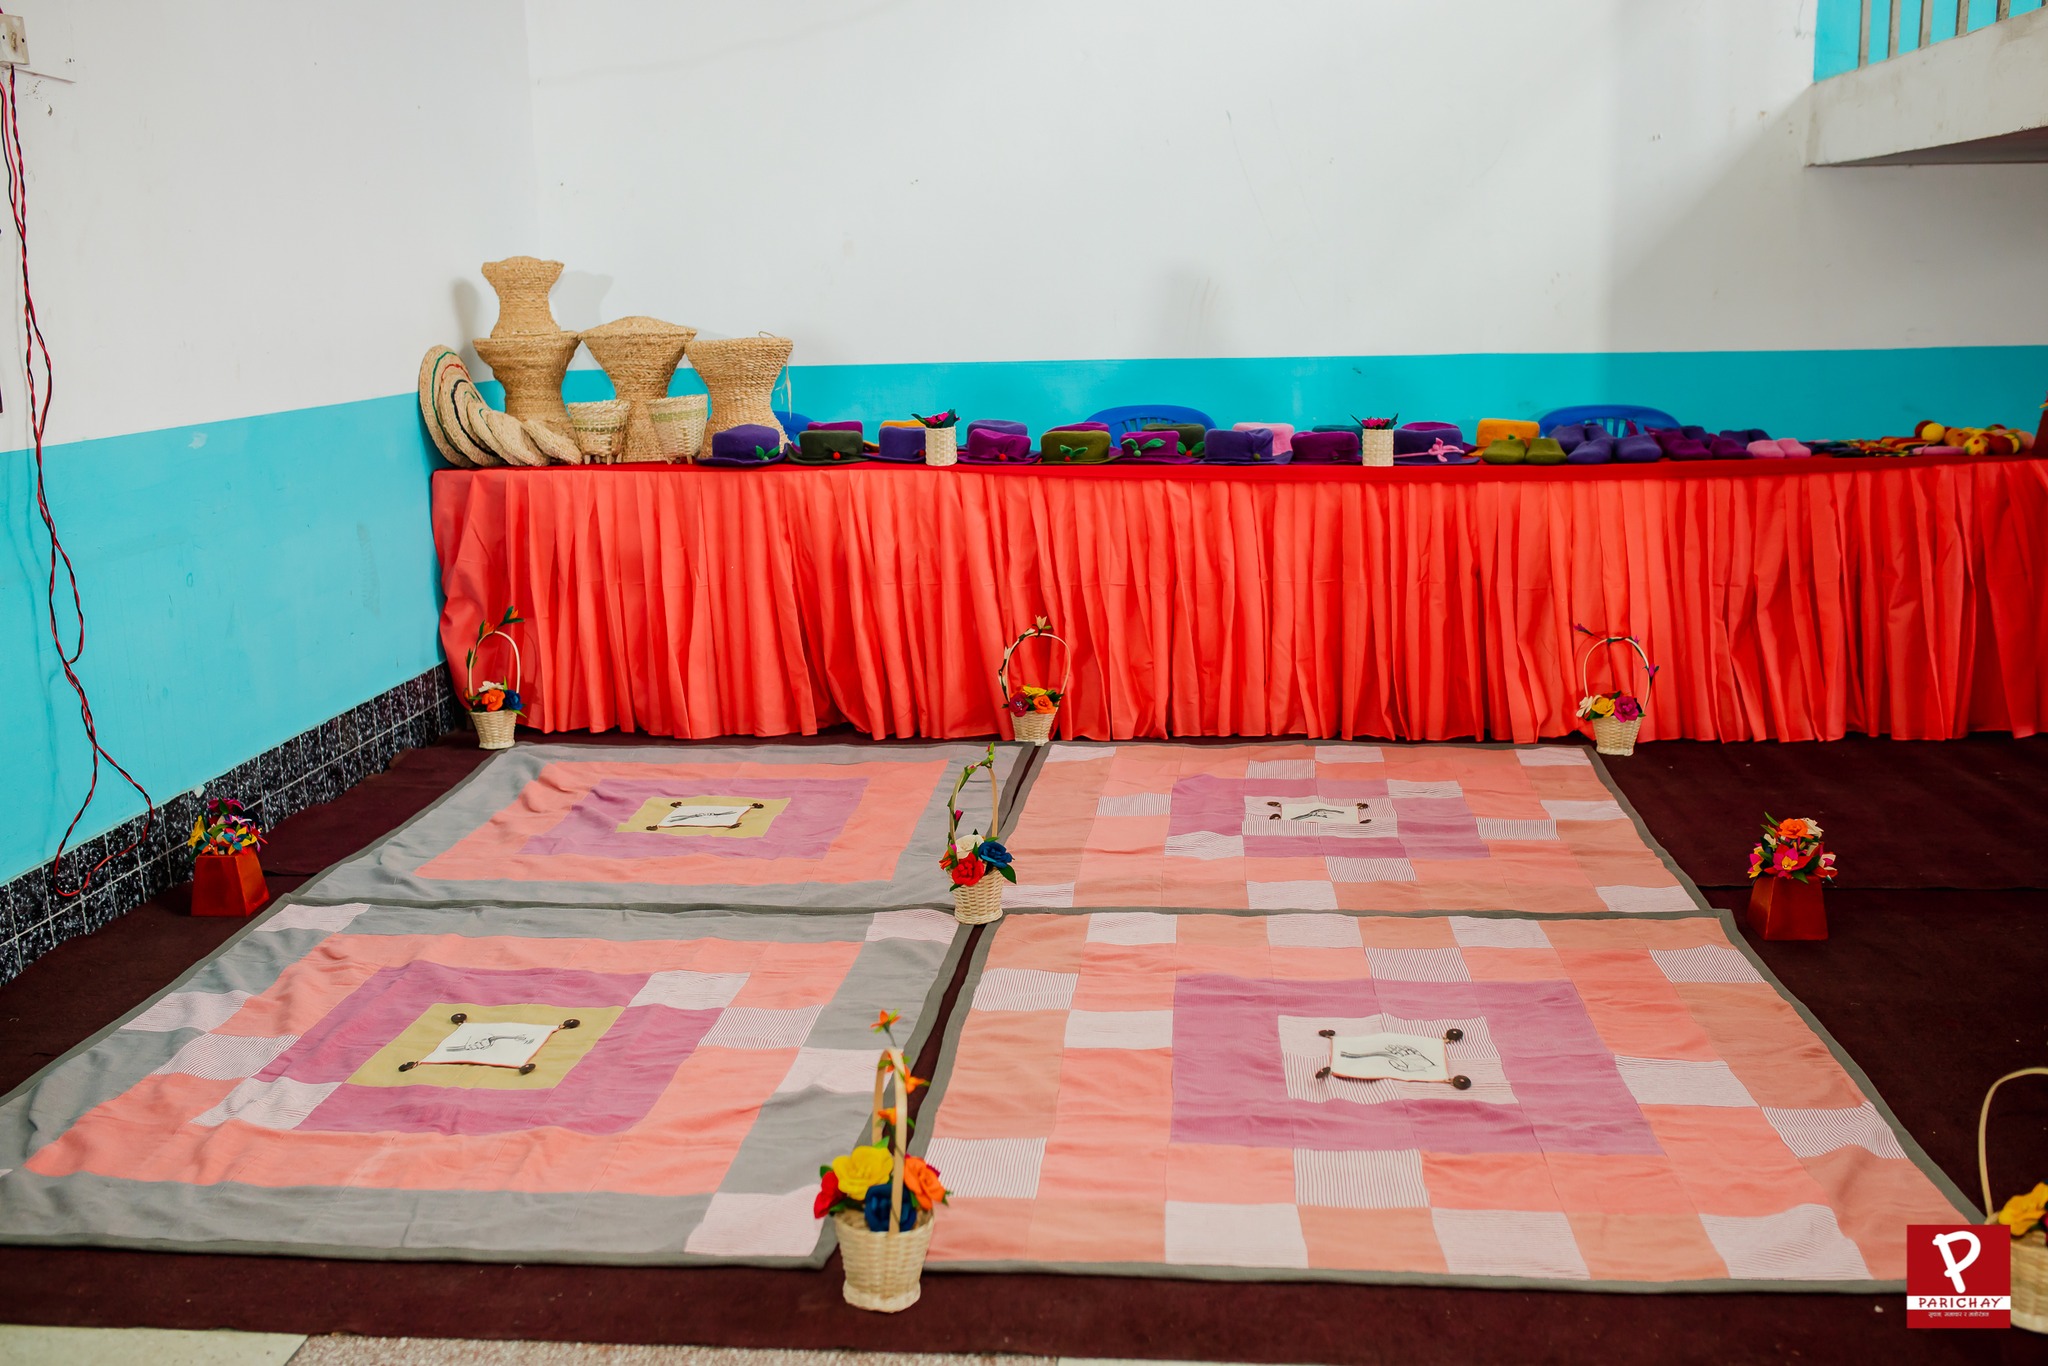 नेपाली तानमा बनाइएको ‘नेचुरल कार्पेट’ अन्तर्राष्ट्रिय बजारमा प्रदर्शन गरिने